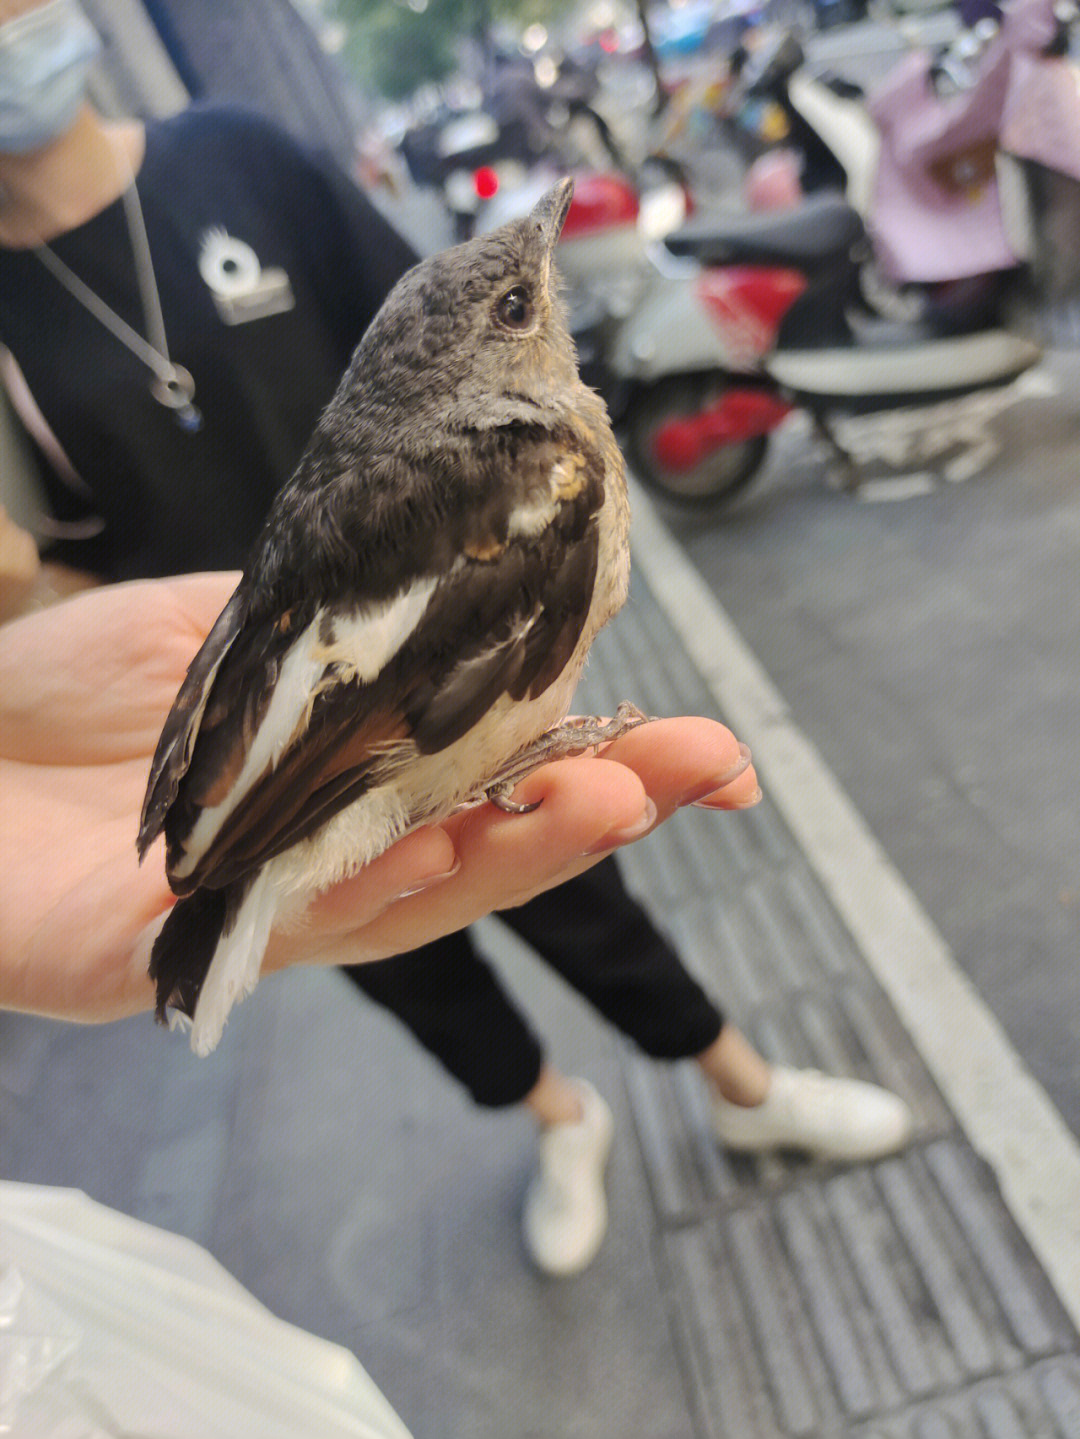 在杭州捡到的这只小幼鸟,度娘告诉我他叫鹊鸲(qú),也叫猪屎渣,四喜